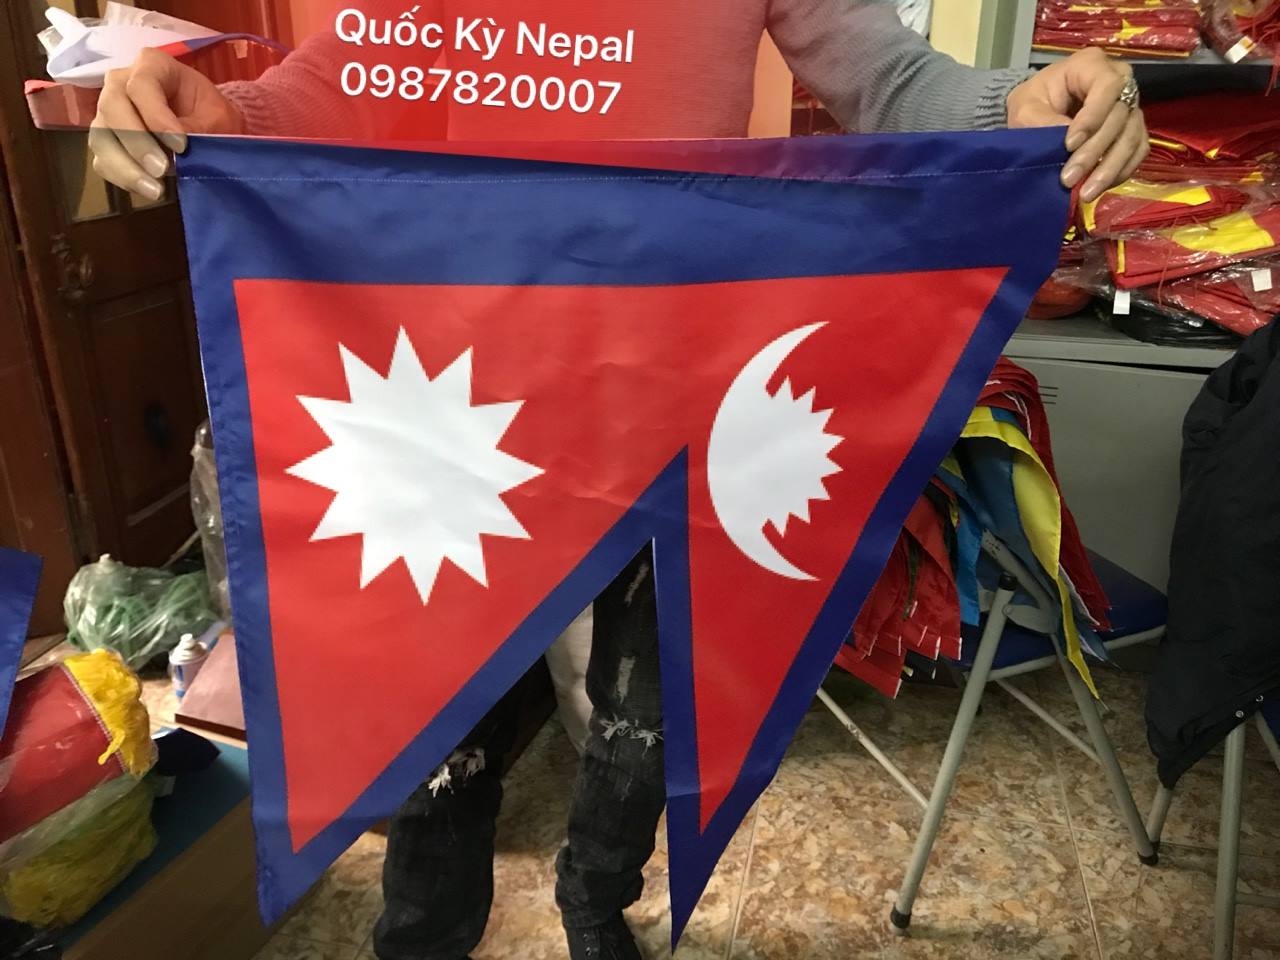 Hình ảnh sẽ giúp bạn có một cái nhìn toàn diện về cờ Nepal và đưa bạn tới với những bộ sưu tập tuyệt đẹp.